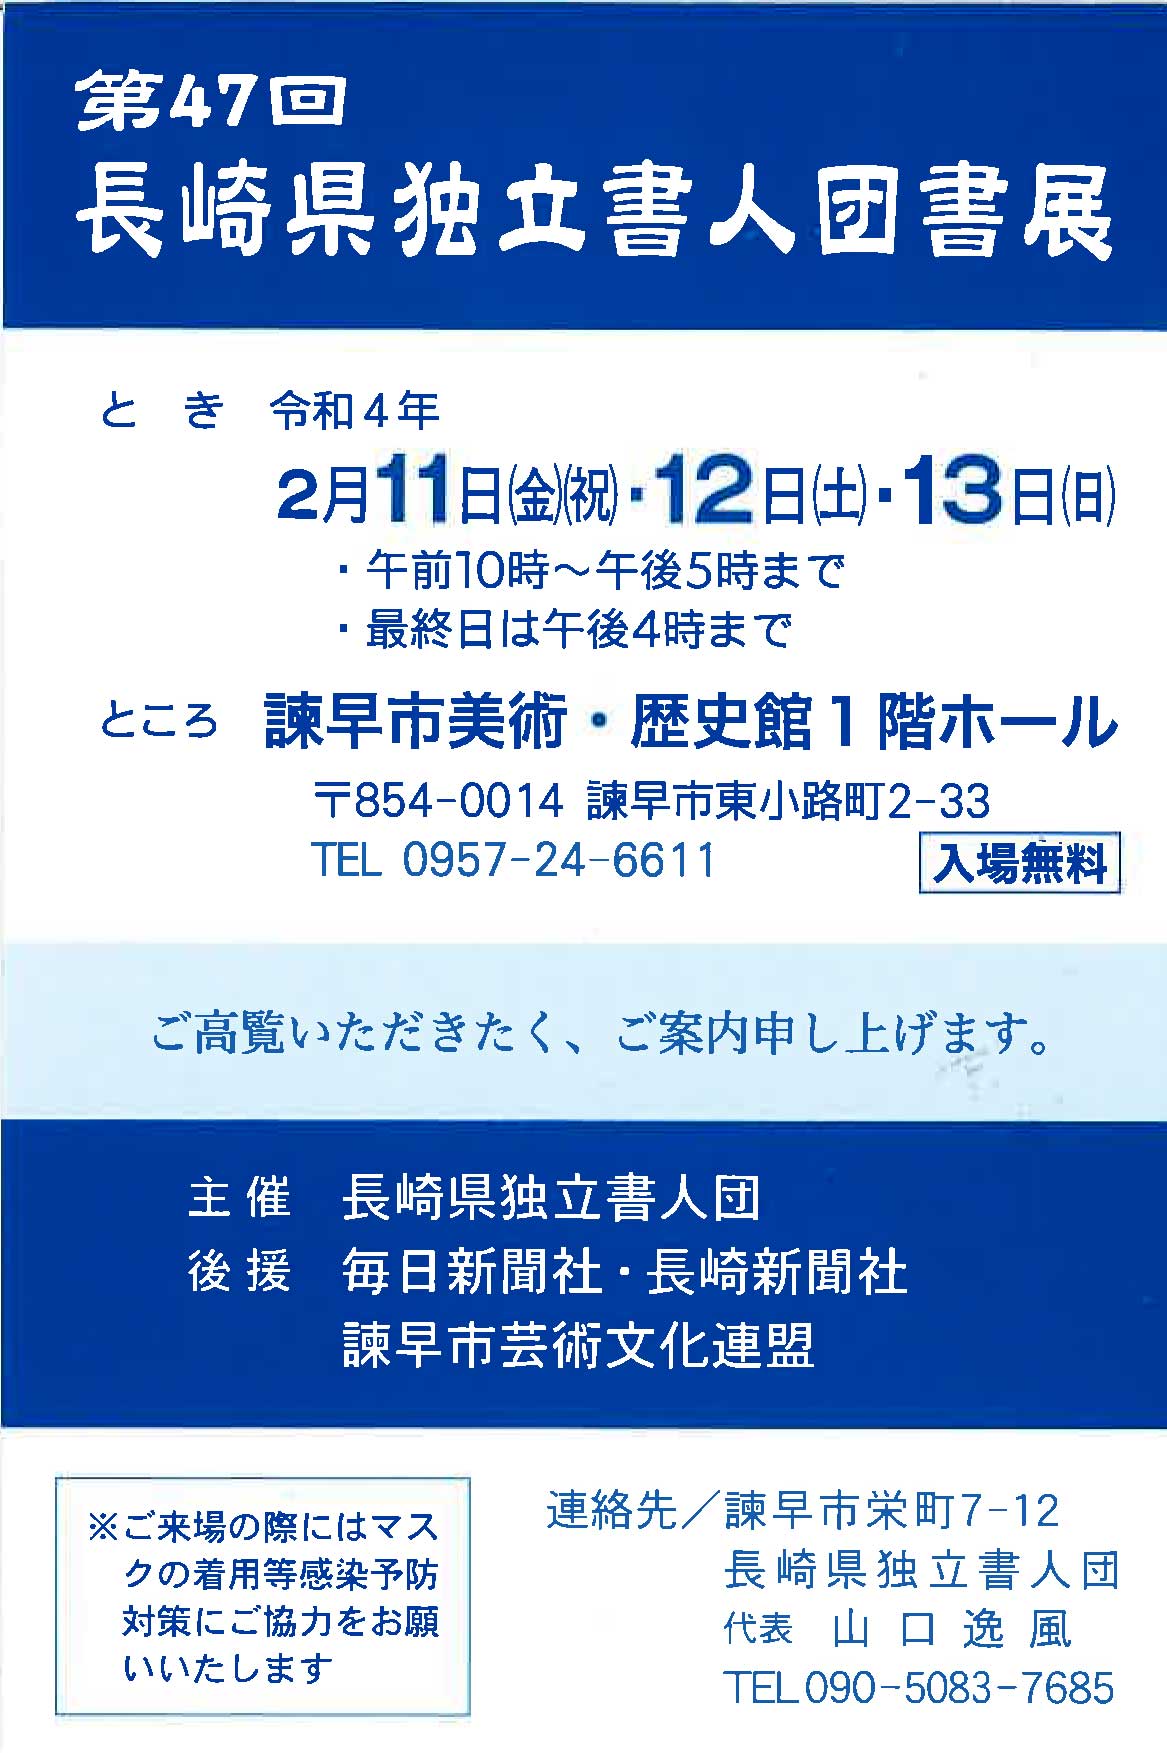 【展覧会情報】第47回 長崎県独立書人団書展